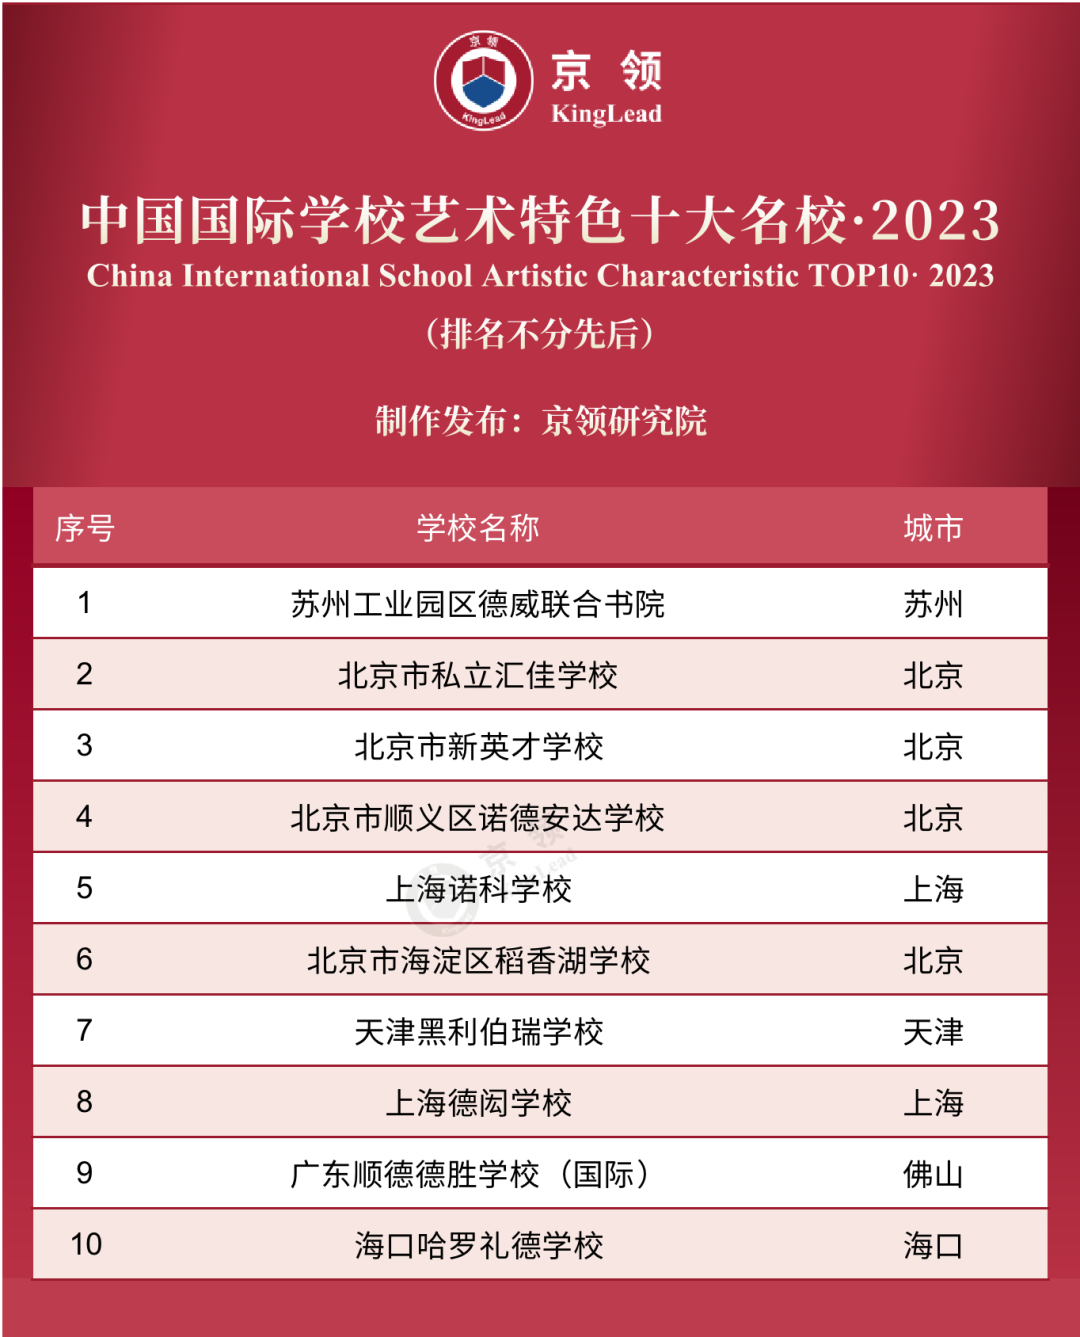 京领2023中国国际学校特色榜发布 英美方向国际学校哪家强  数据 第10张